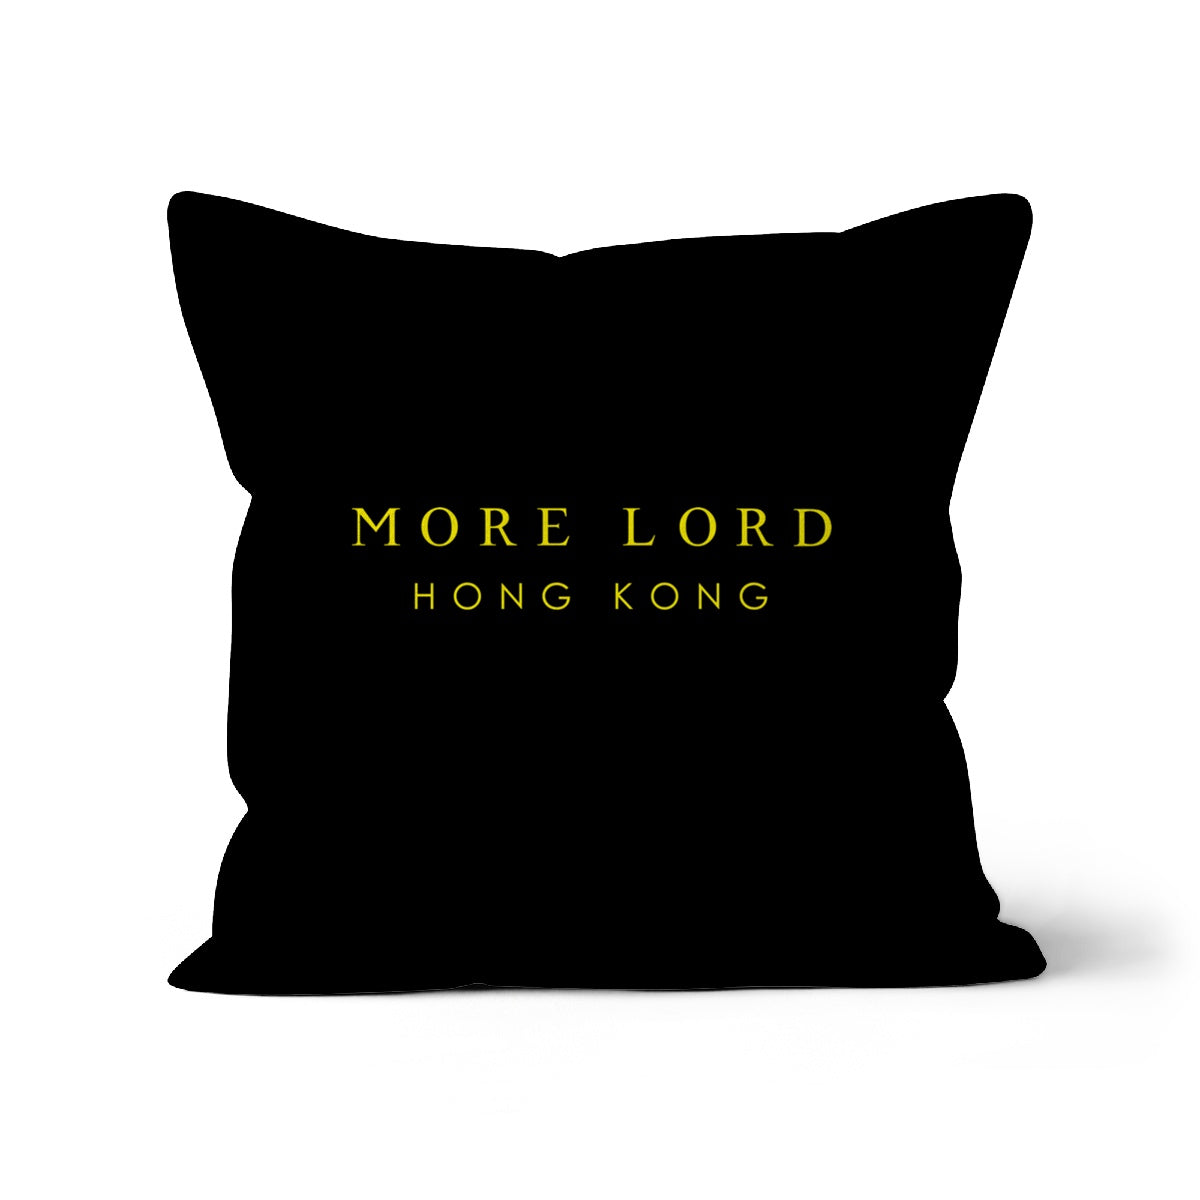 More Lord Hong Kong  Cushion